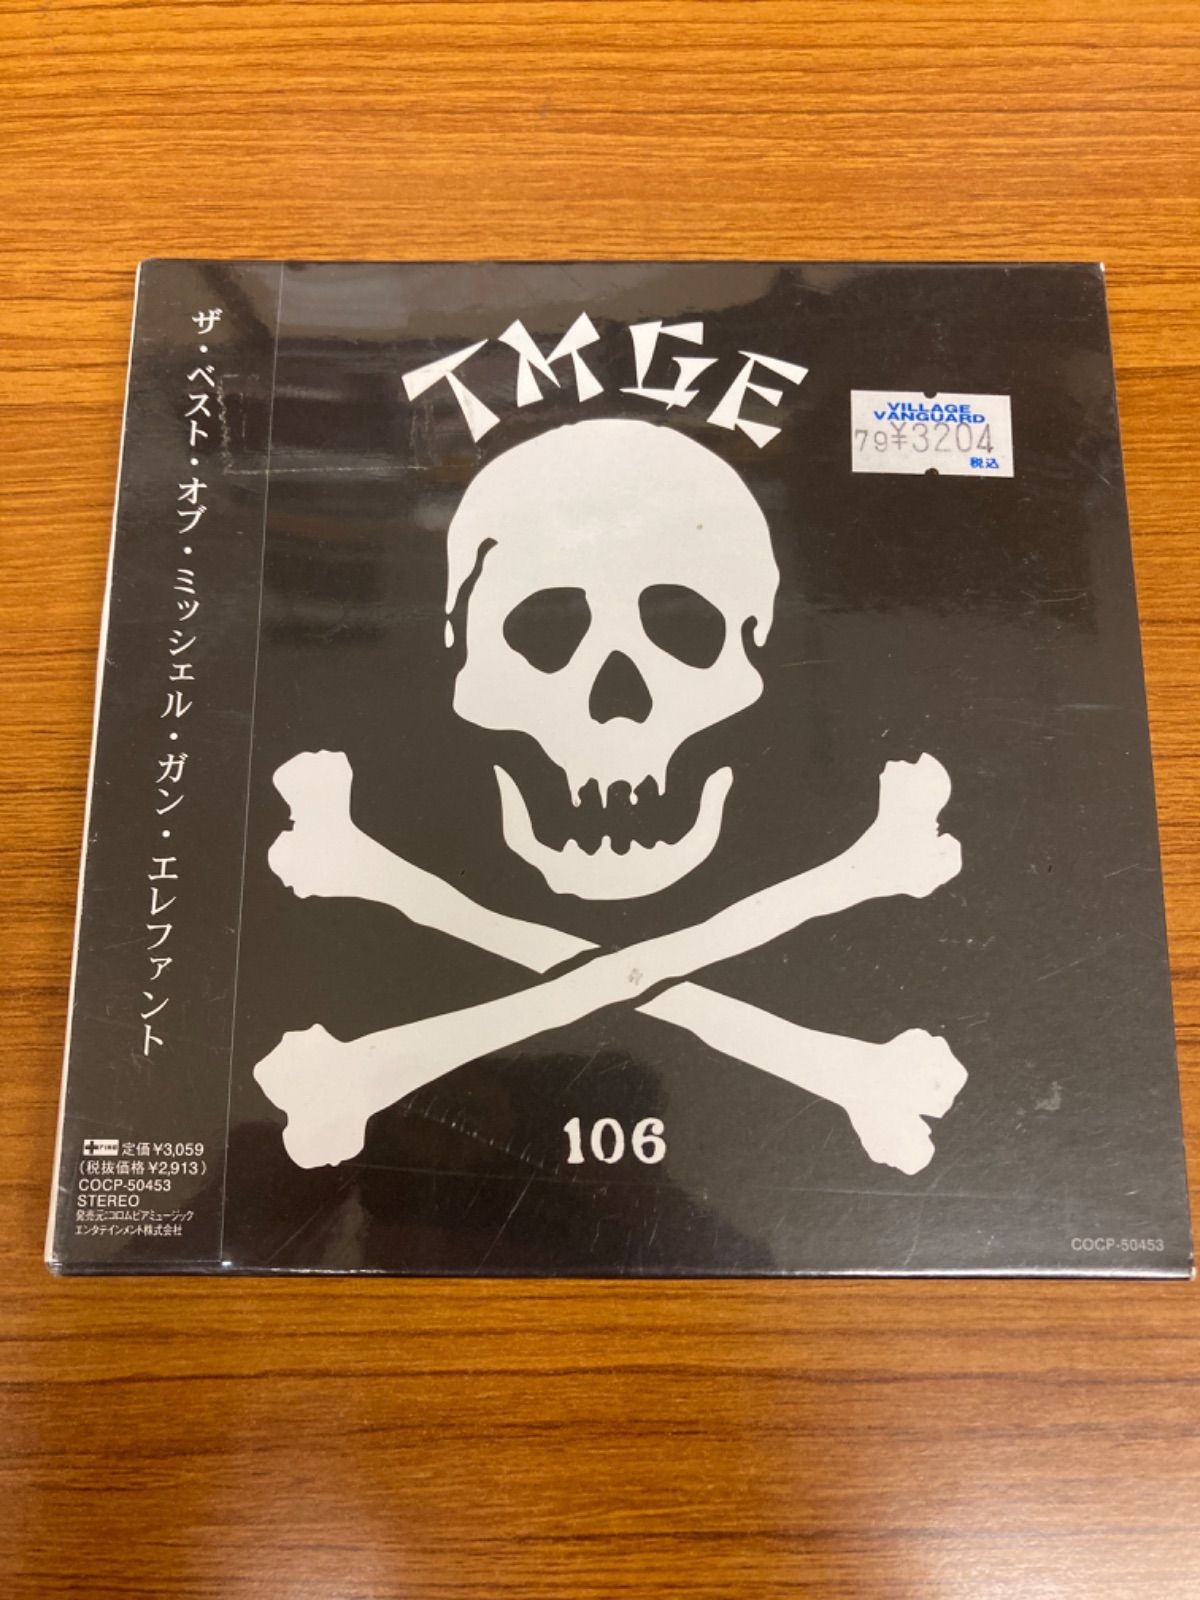 TMGE ミッシェルガンエレファント 『TMGE106』 アナログ LP 高評価！ - 邦楽